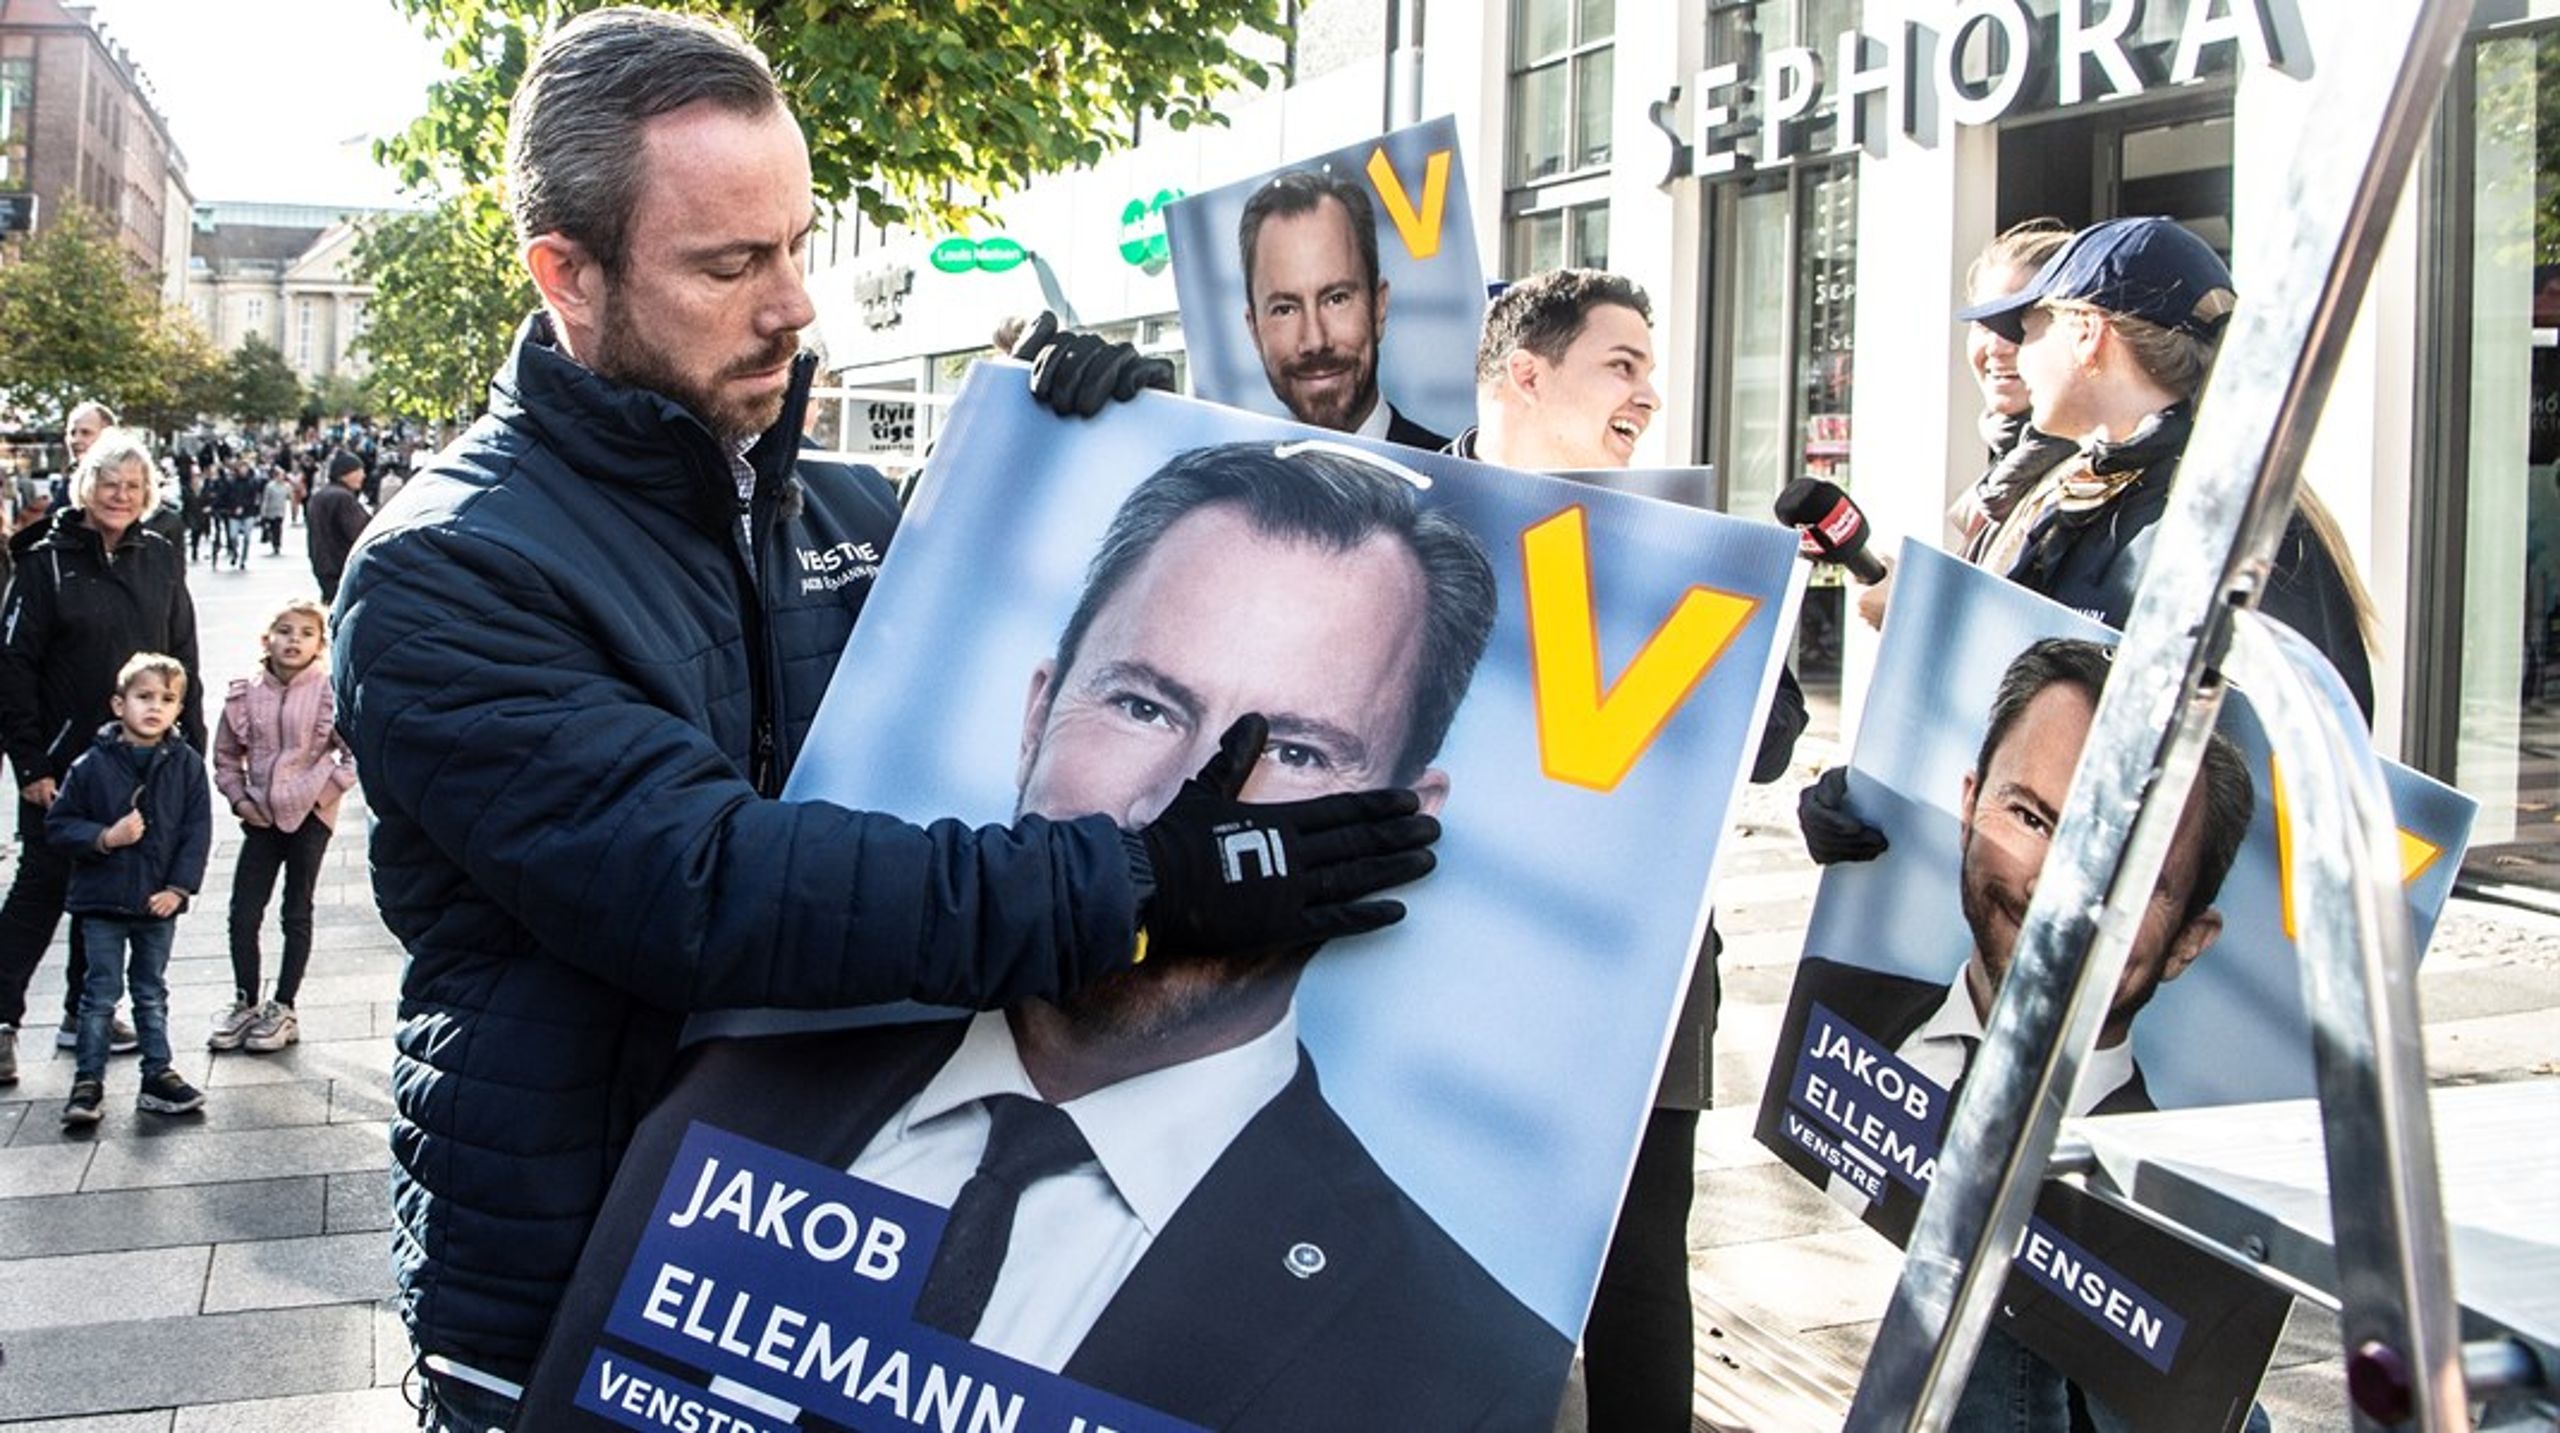 Selvom Jakob Ellemann-Jensen fik omtrent 1.500 flere stemmer i 2022 end i 2019, hvor han ikke var partiformand, så dækker den beskedne fremgang over et markant vælgertab for Venstre.